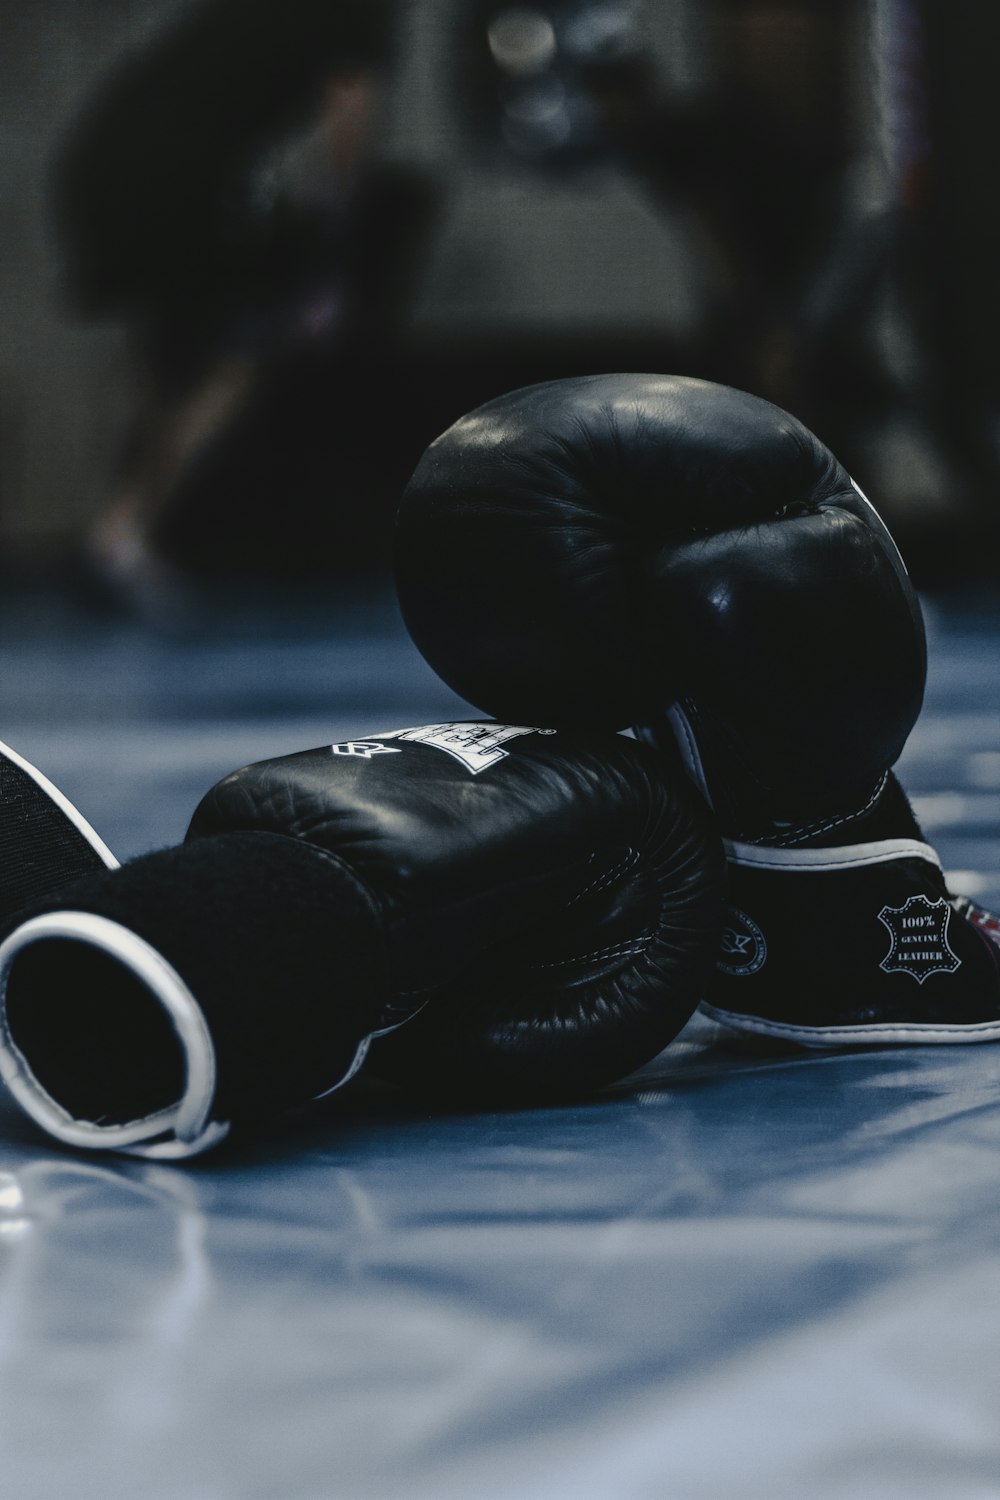 Imágenes de Kick Boxing | Descarga imágenes gratuitas en Unsplash